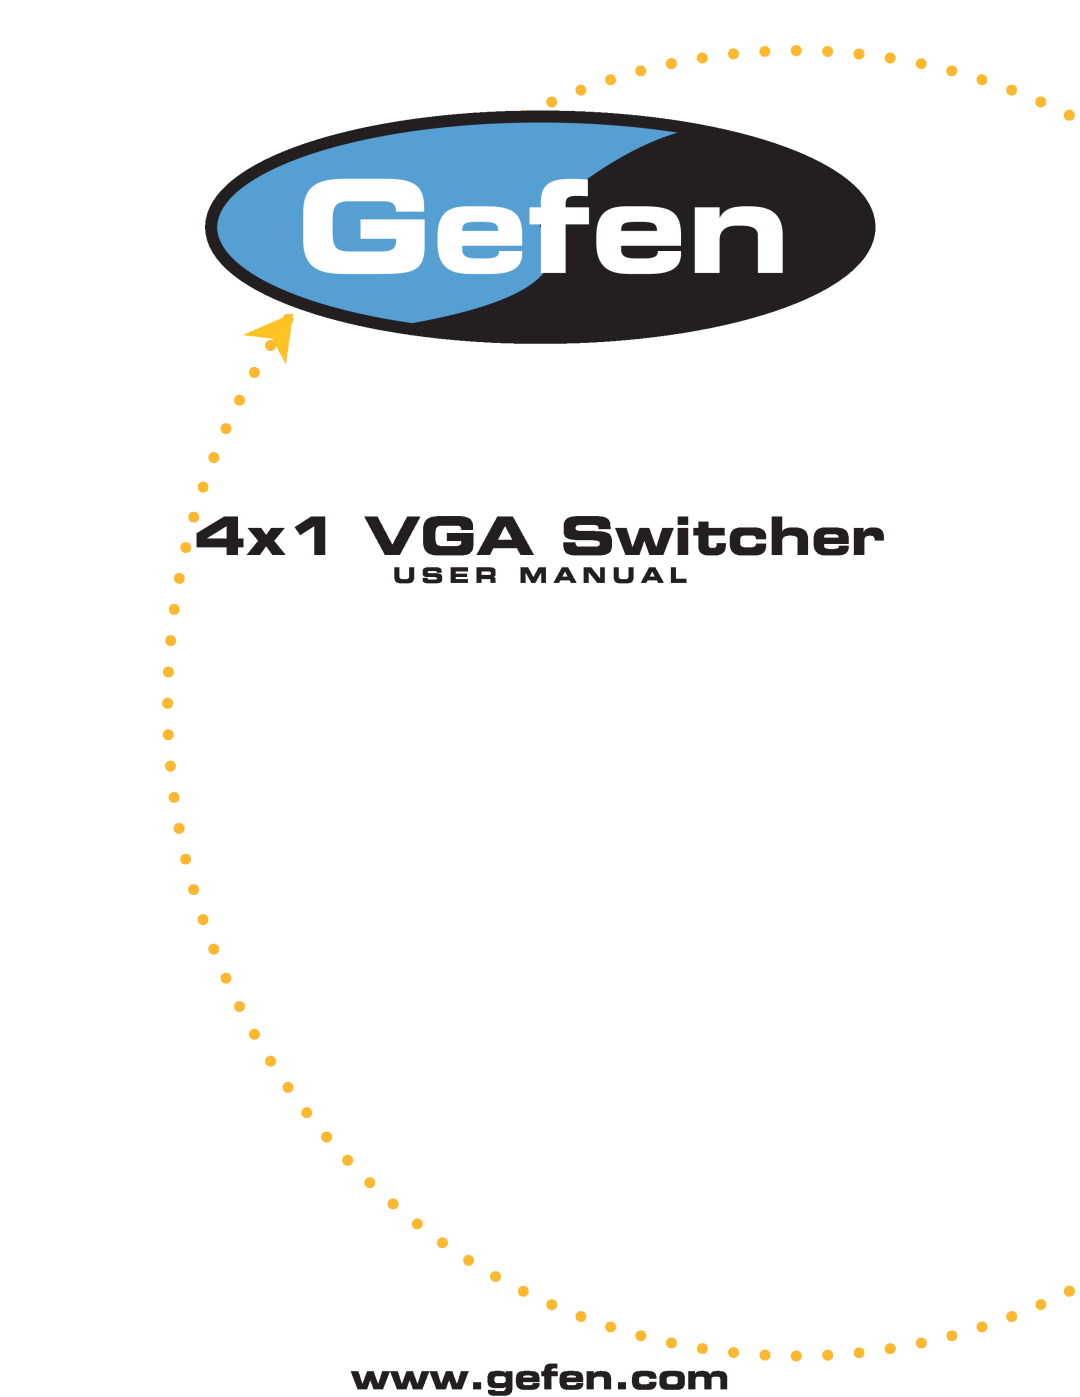 Gefen Gefen user manual 4x1 VGA Switcher, U S E R M A N U A L 